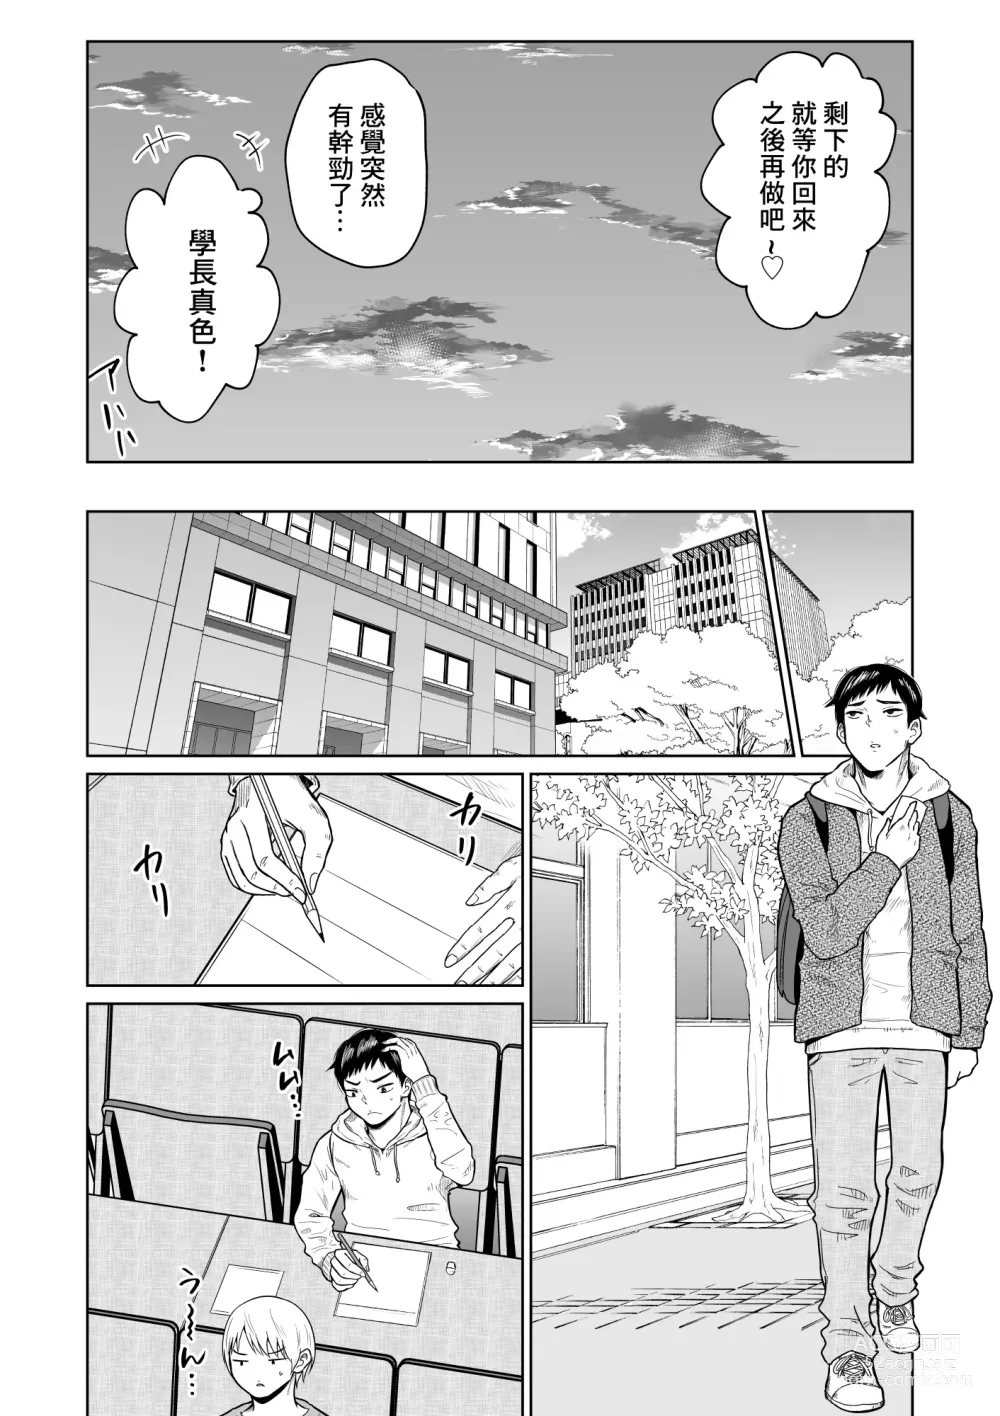 Page 8 of doujinshi Juken no Tame ni Tokyo ni Kita dake datta no ni